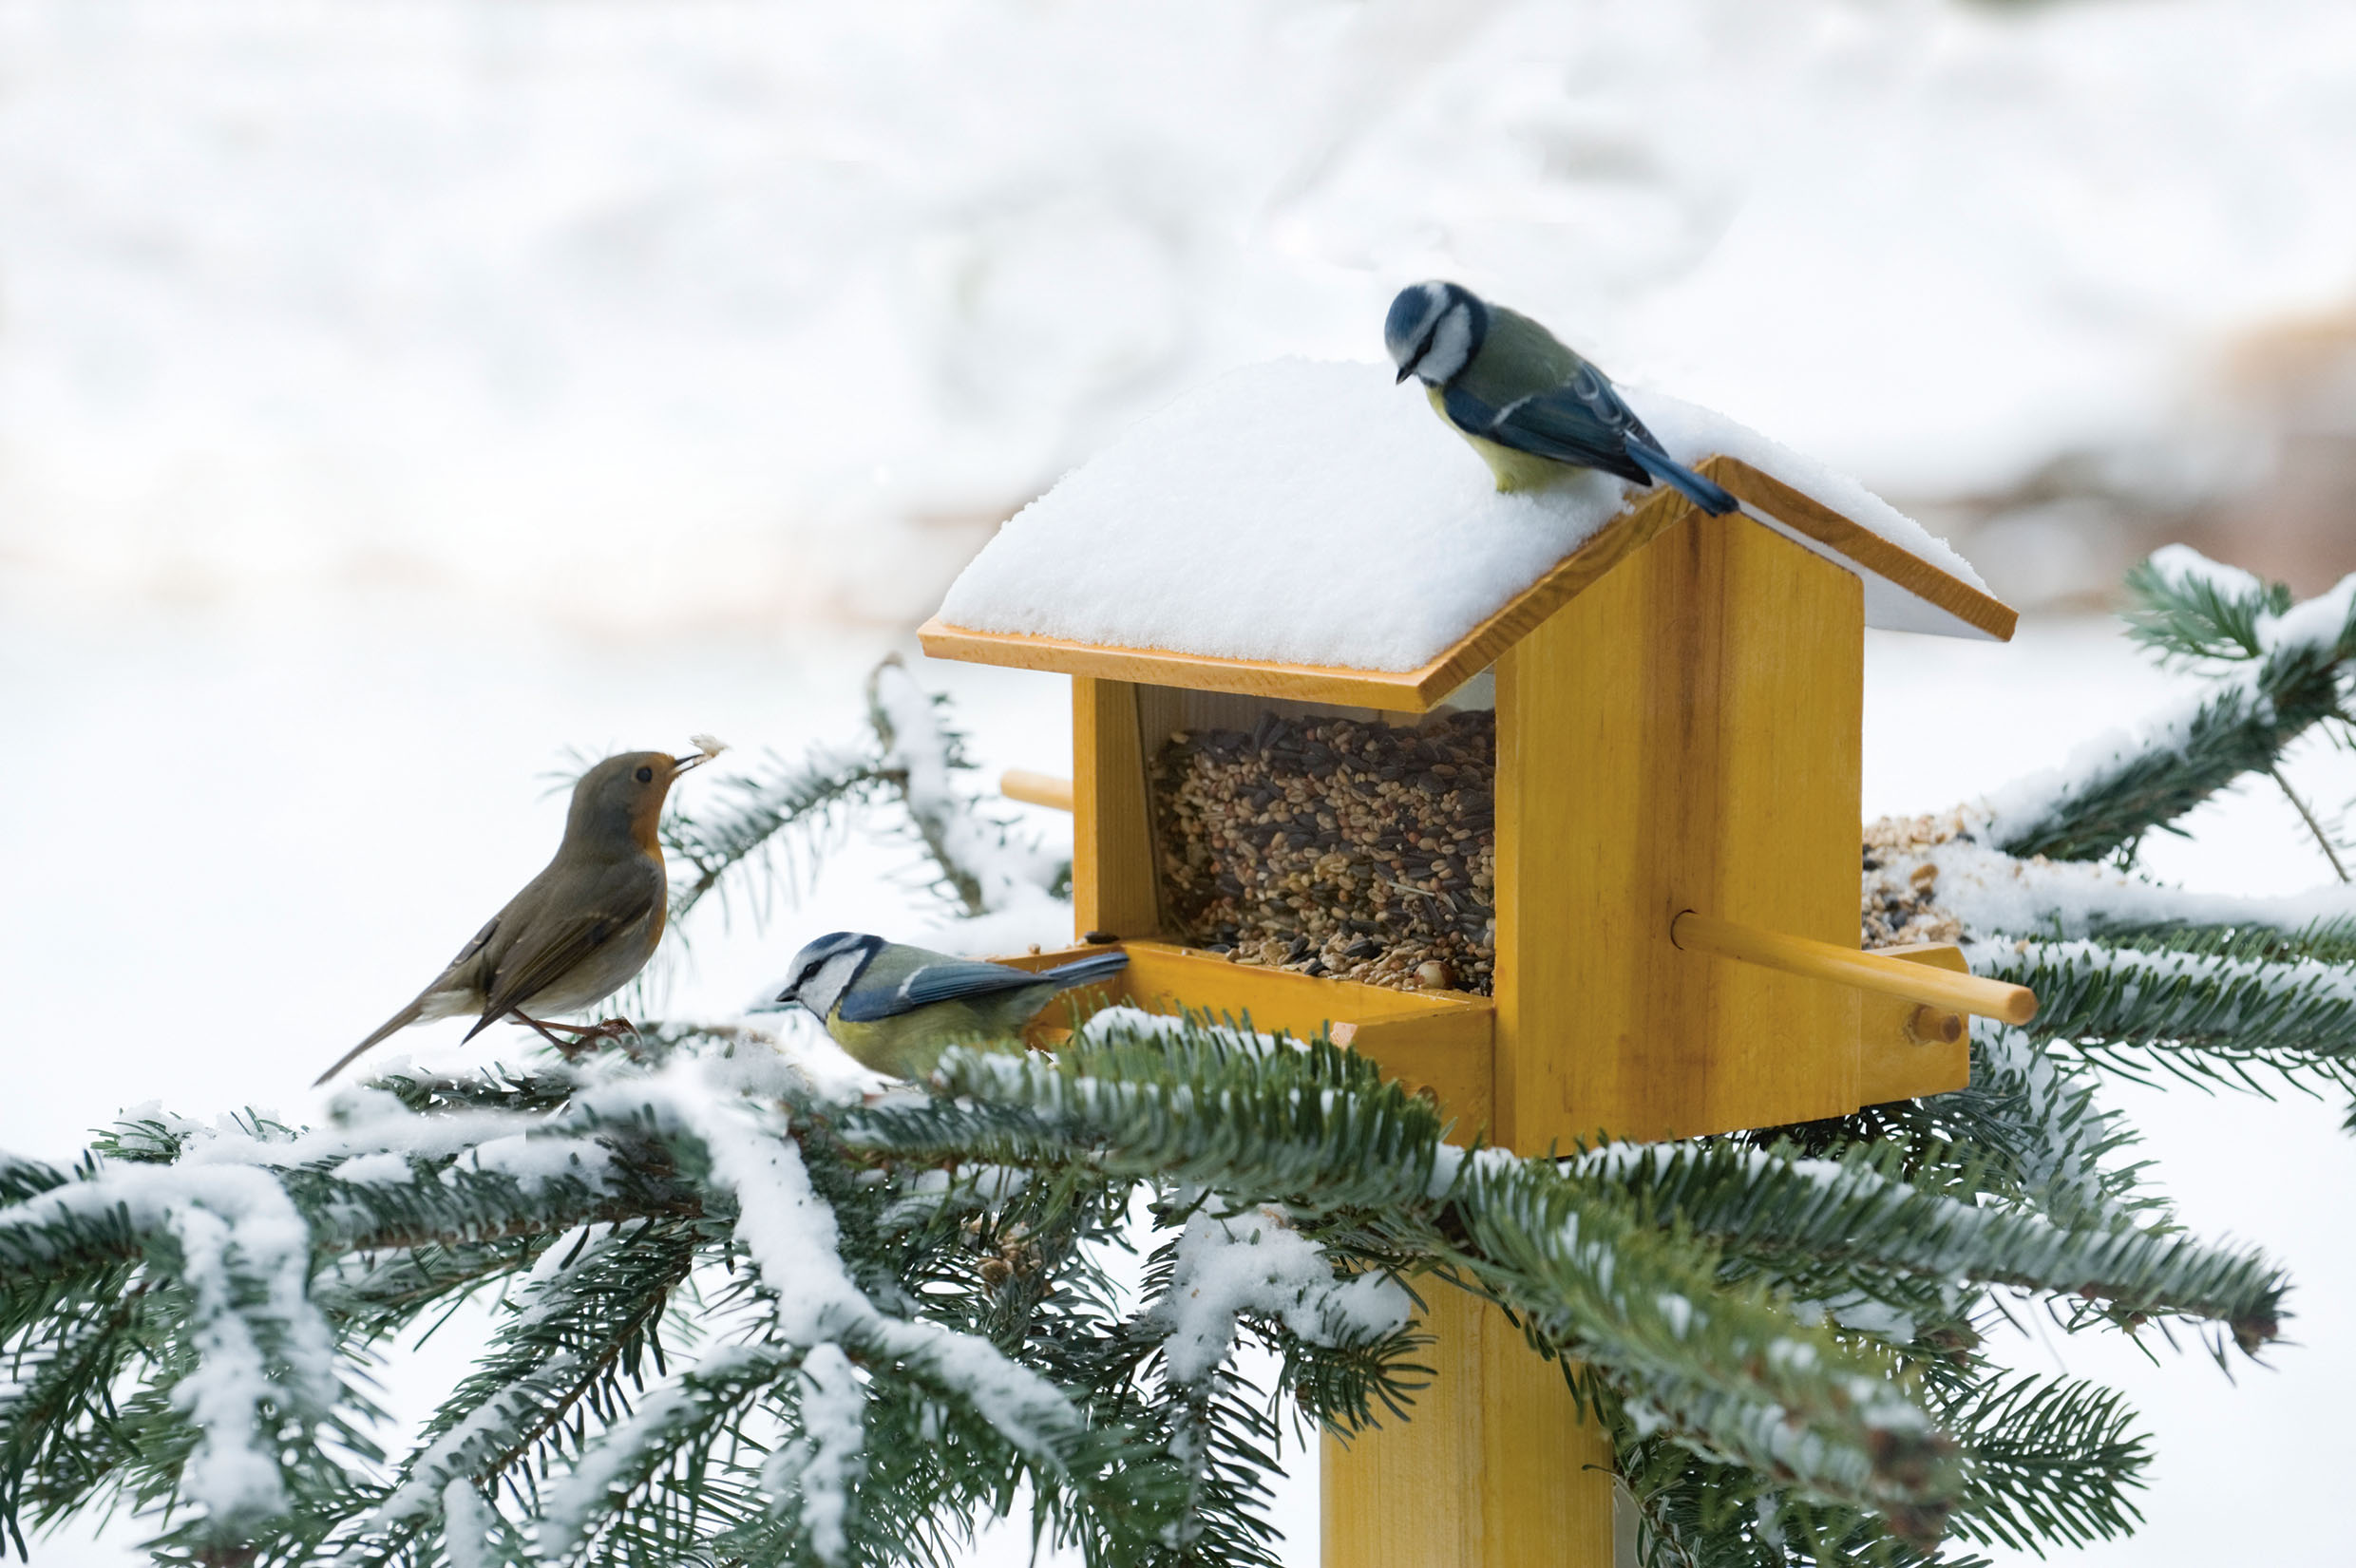 Comment aider les oiseaux à passer l'hiver - Centre National de